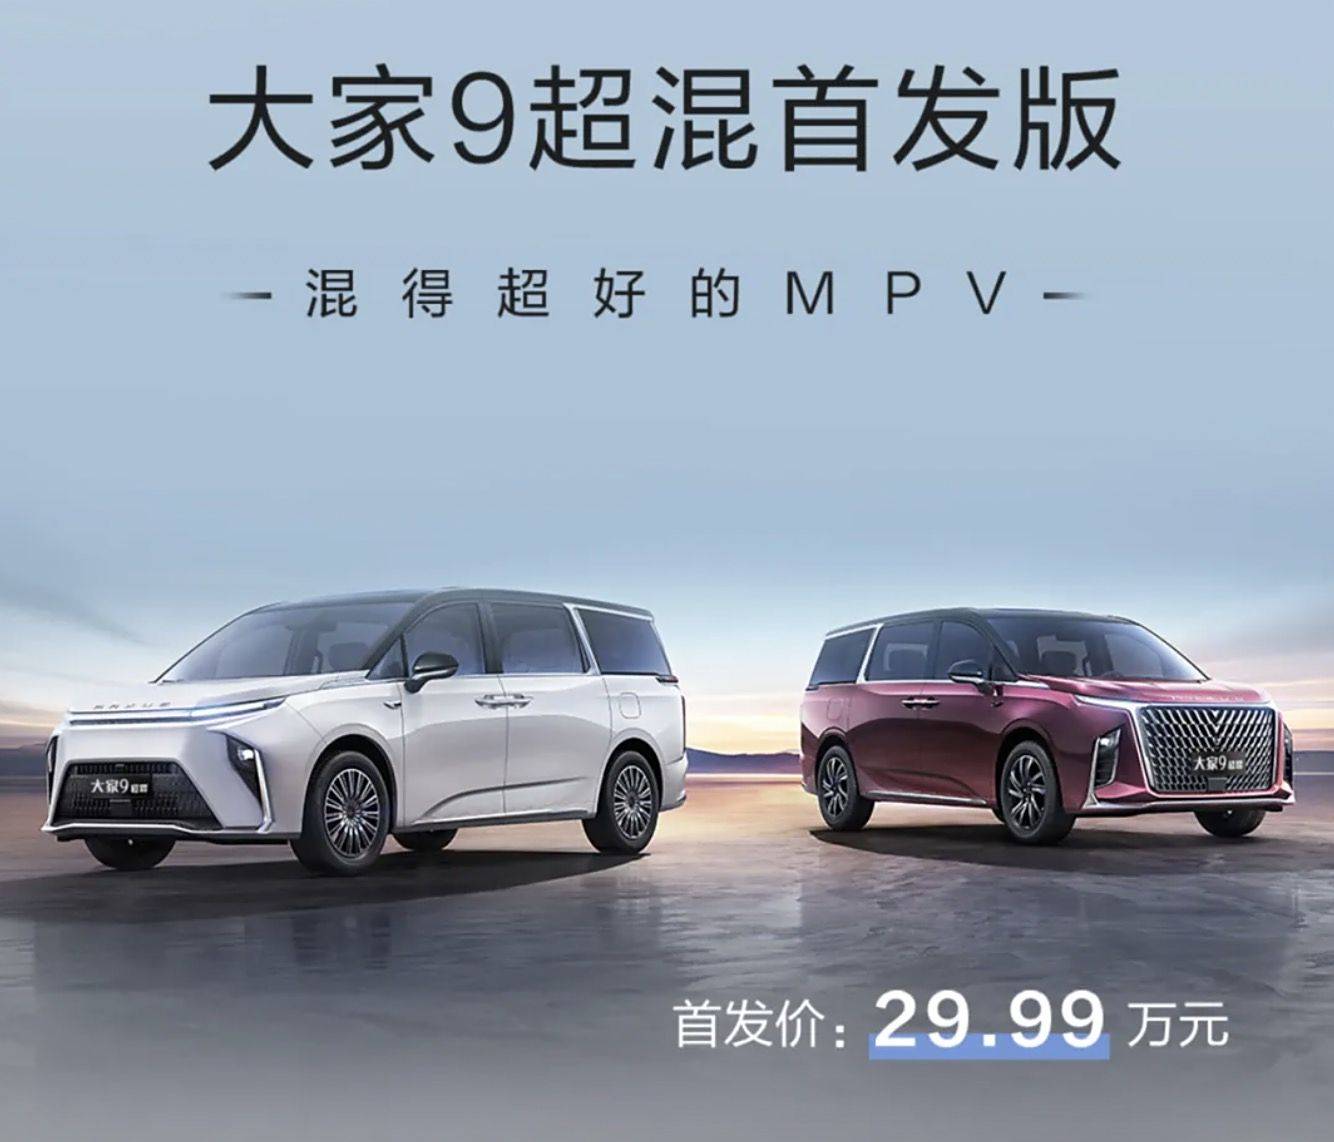 售价29.99万元。Sohu.com搜狐汽车SAIC大通MAXUS人人9超级混动第一版上市。